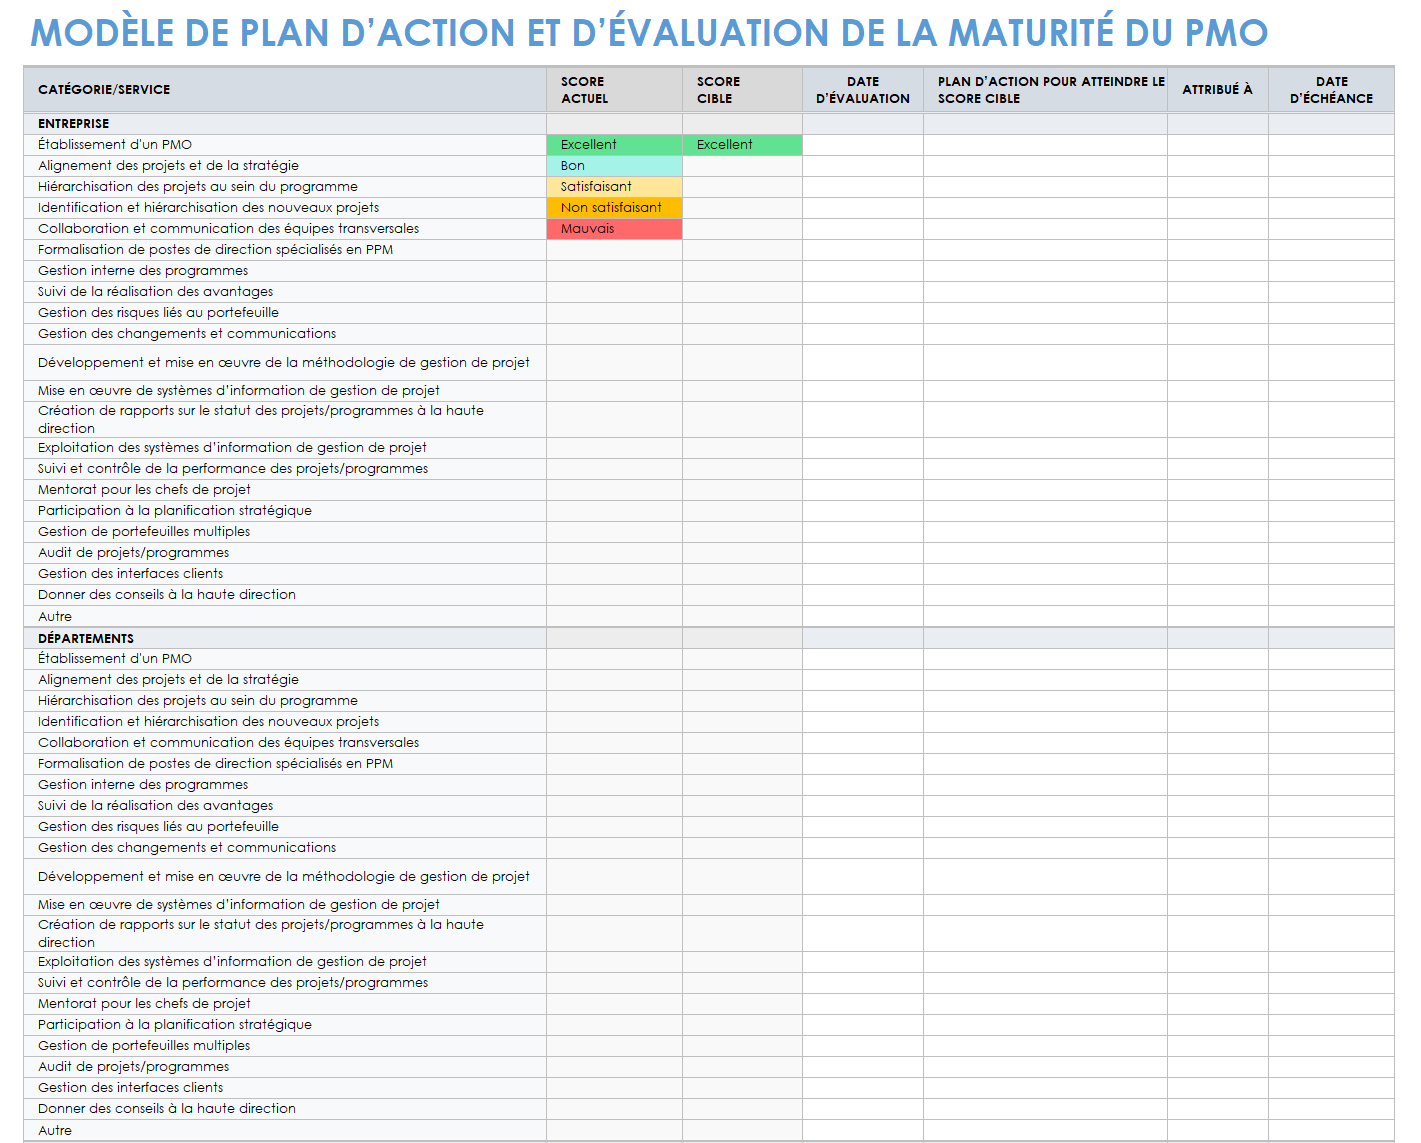  Modèle d'évaluation de la maturité et de plan d'action du PMO